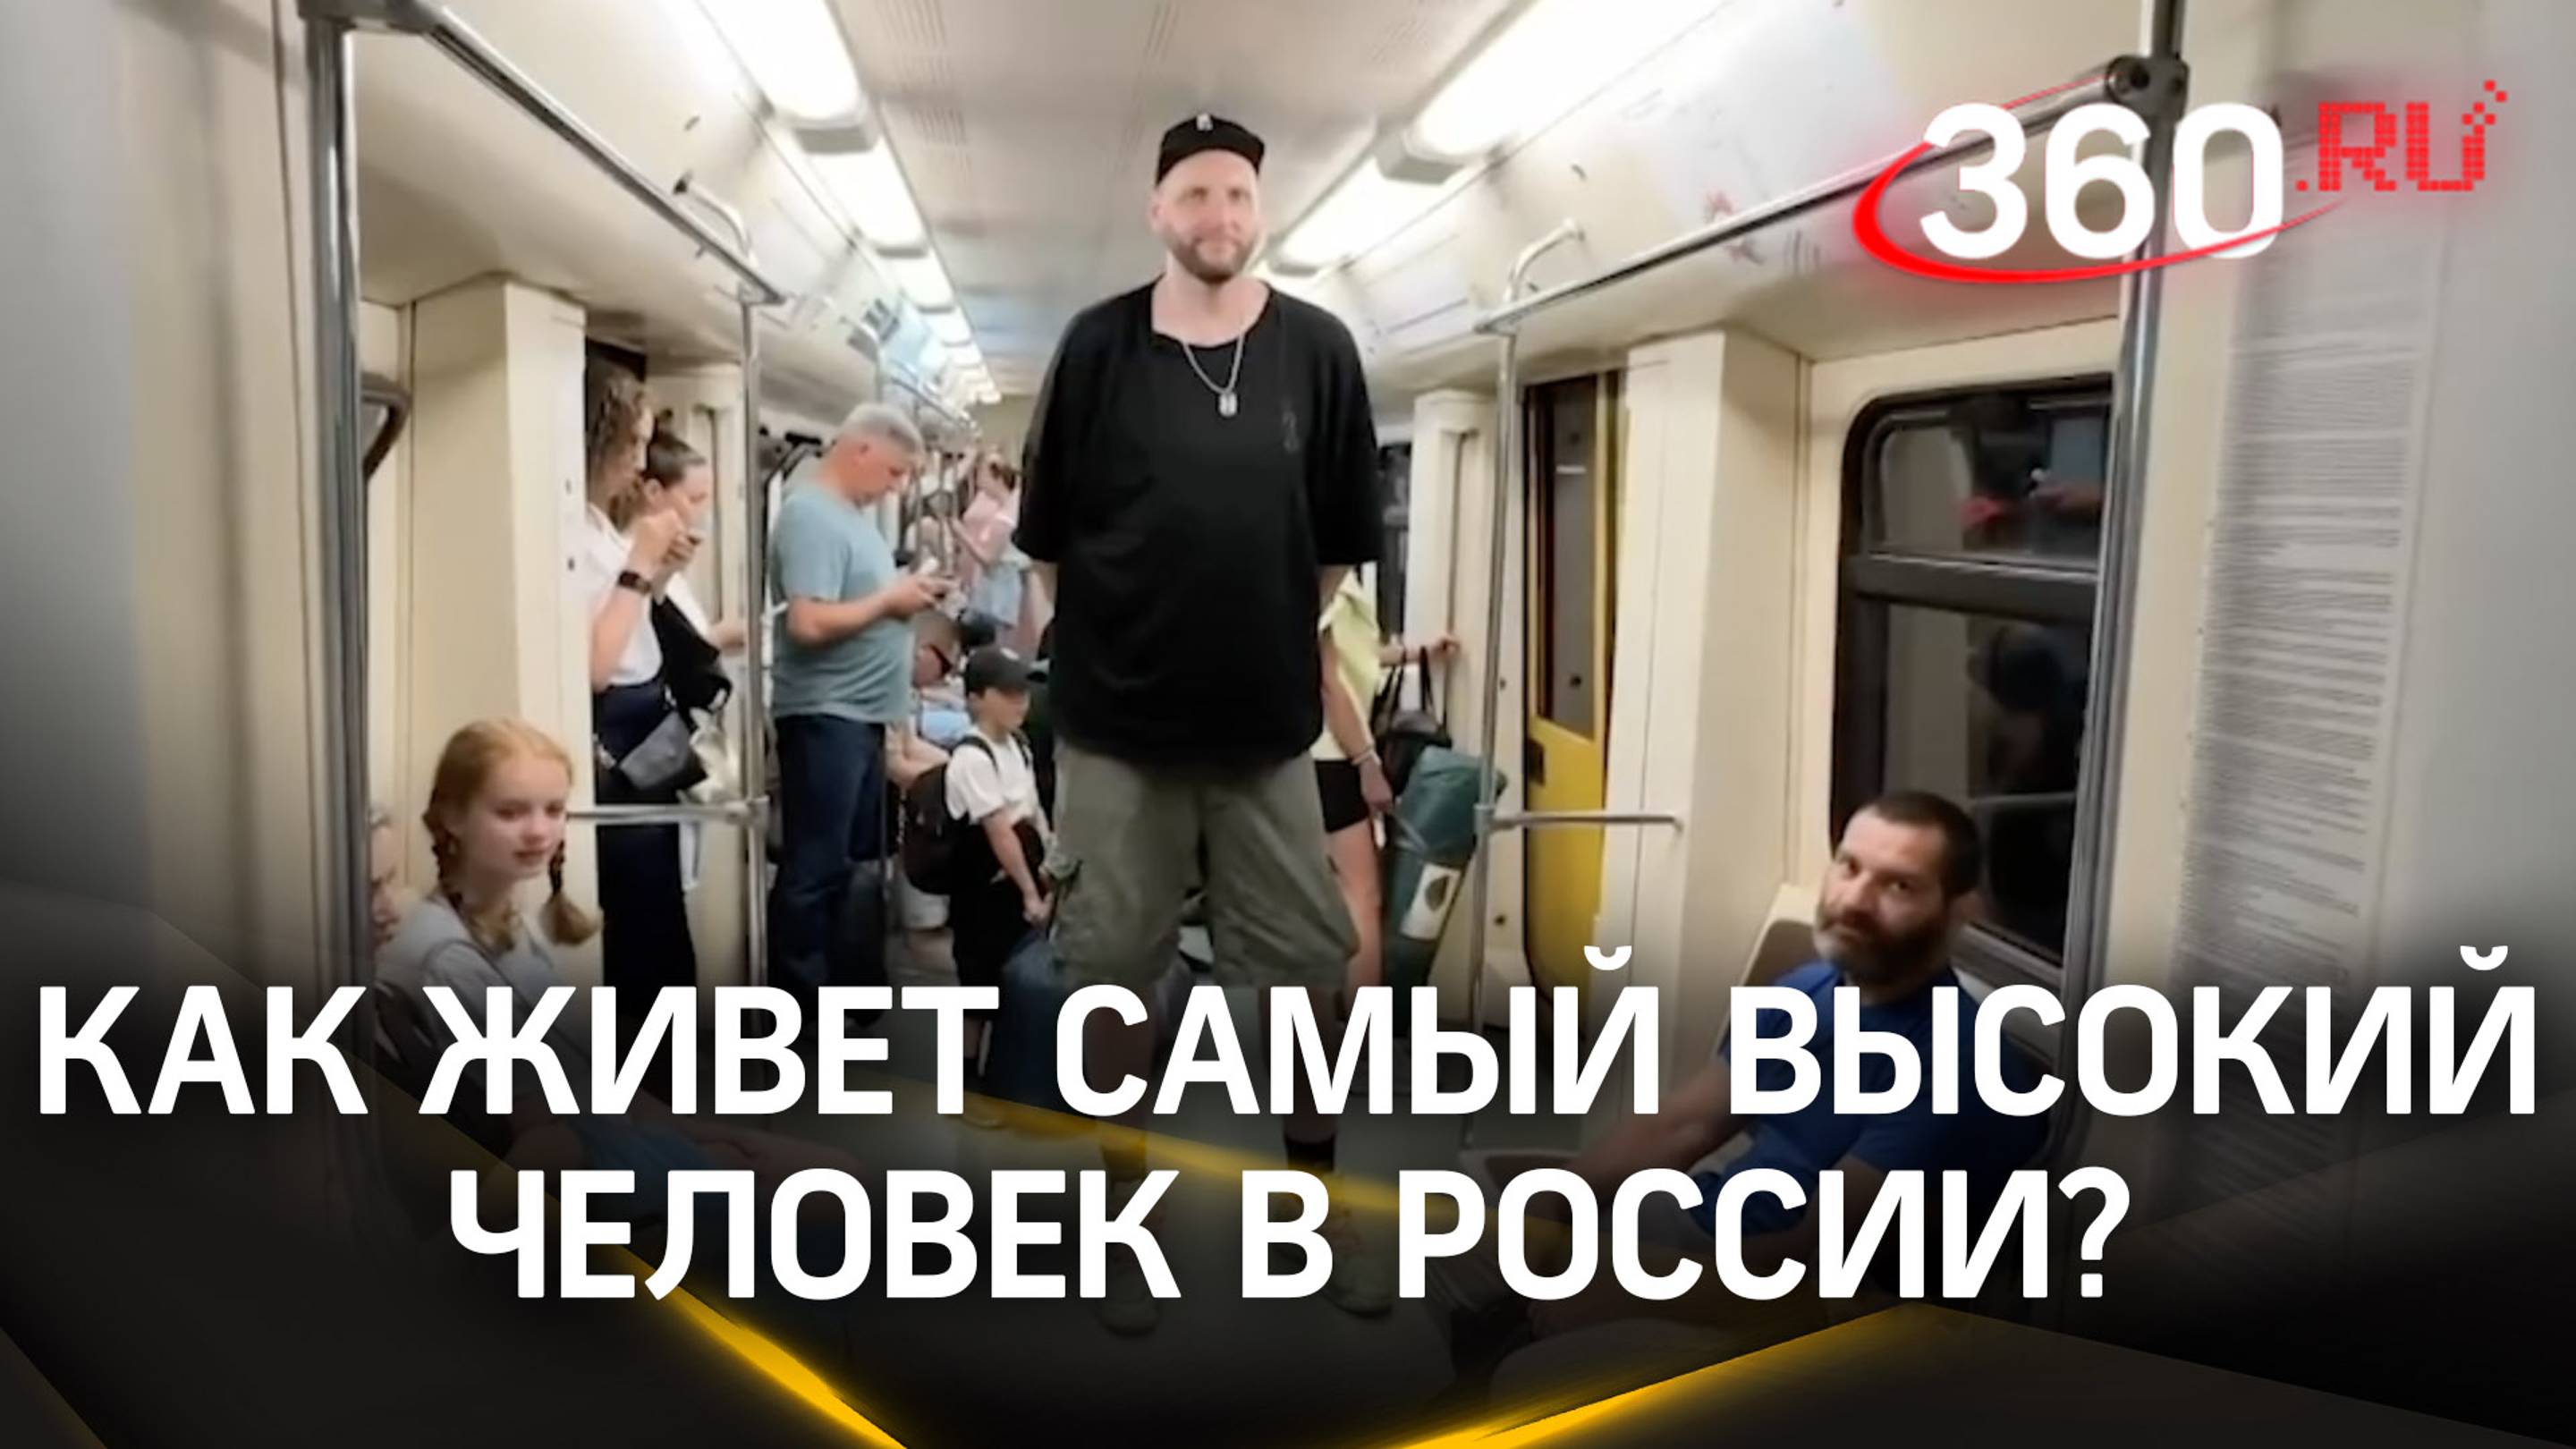 2,25 метра роста: как живет самый высокий человек в России?